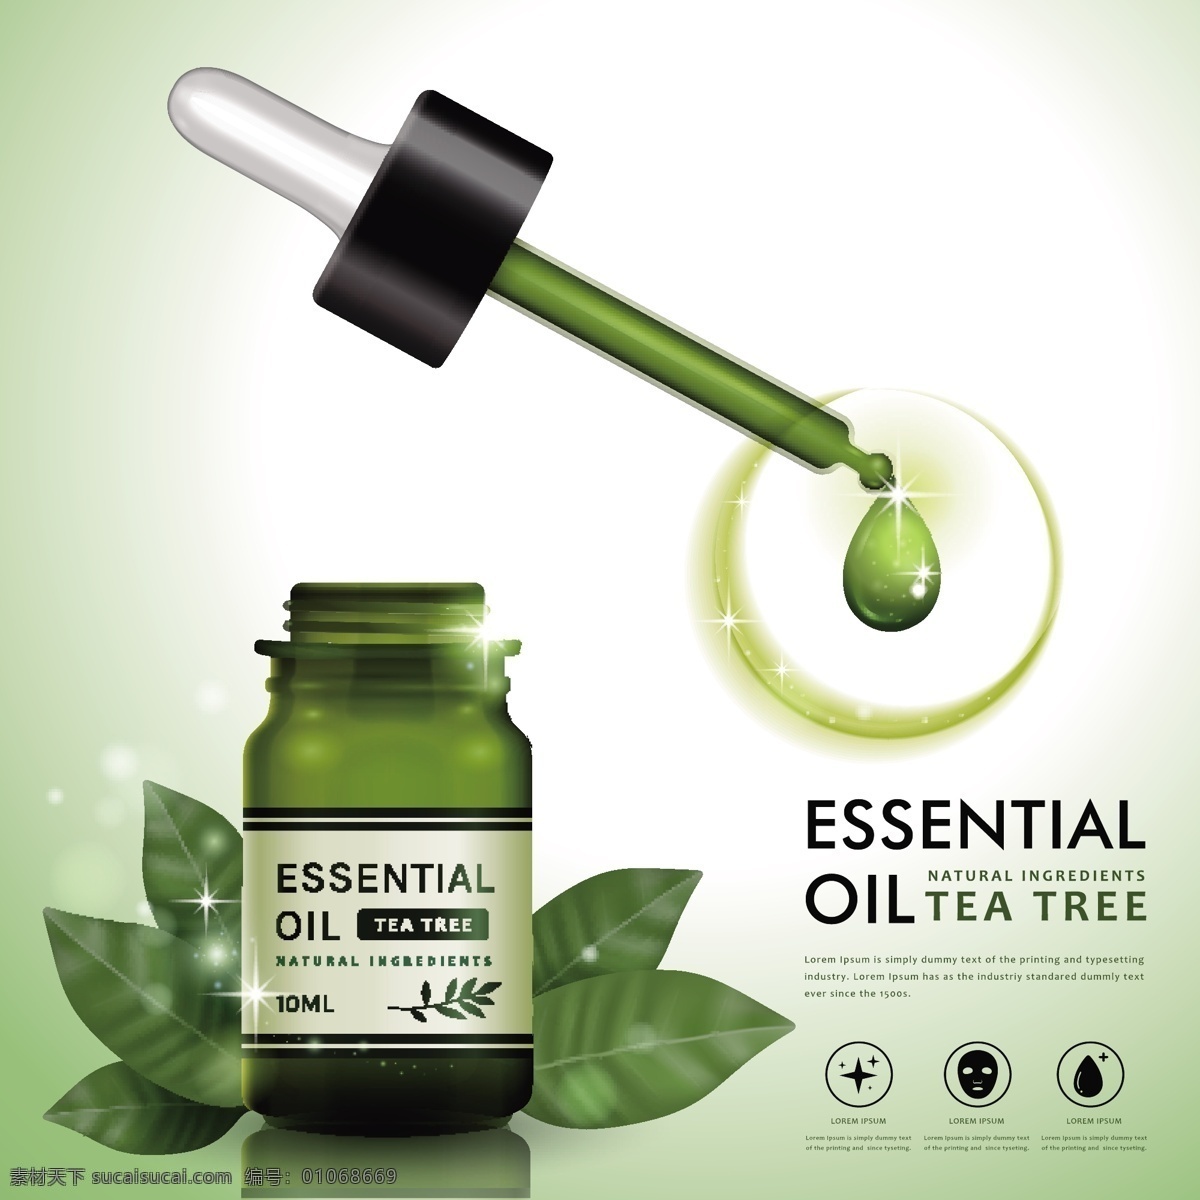 天然 茶树 油 精华液 产品推广 海报 矢量 平面设计 矢量图 矢量素材 商务风格 时尚风格 海报矢量图片